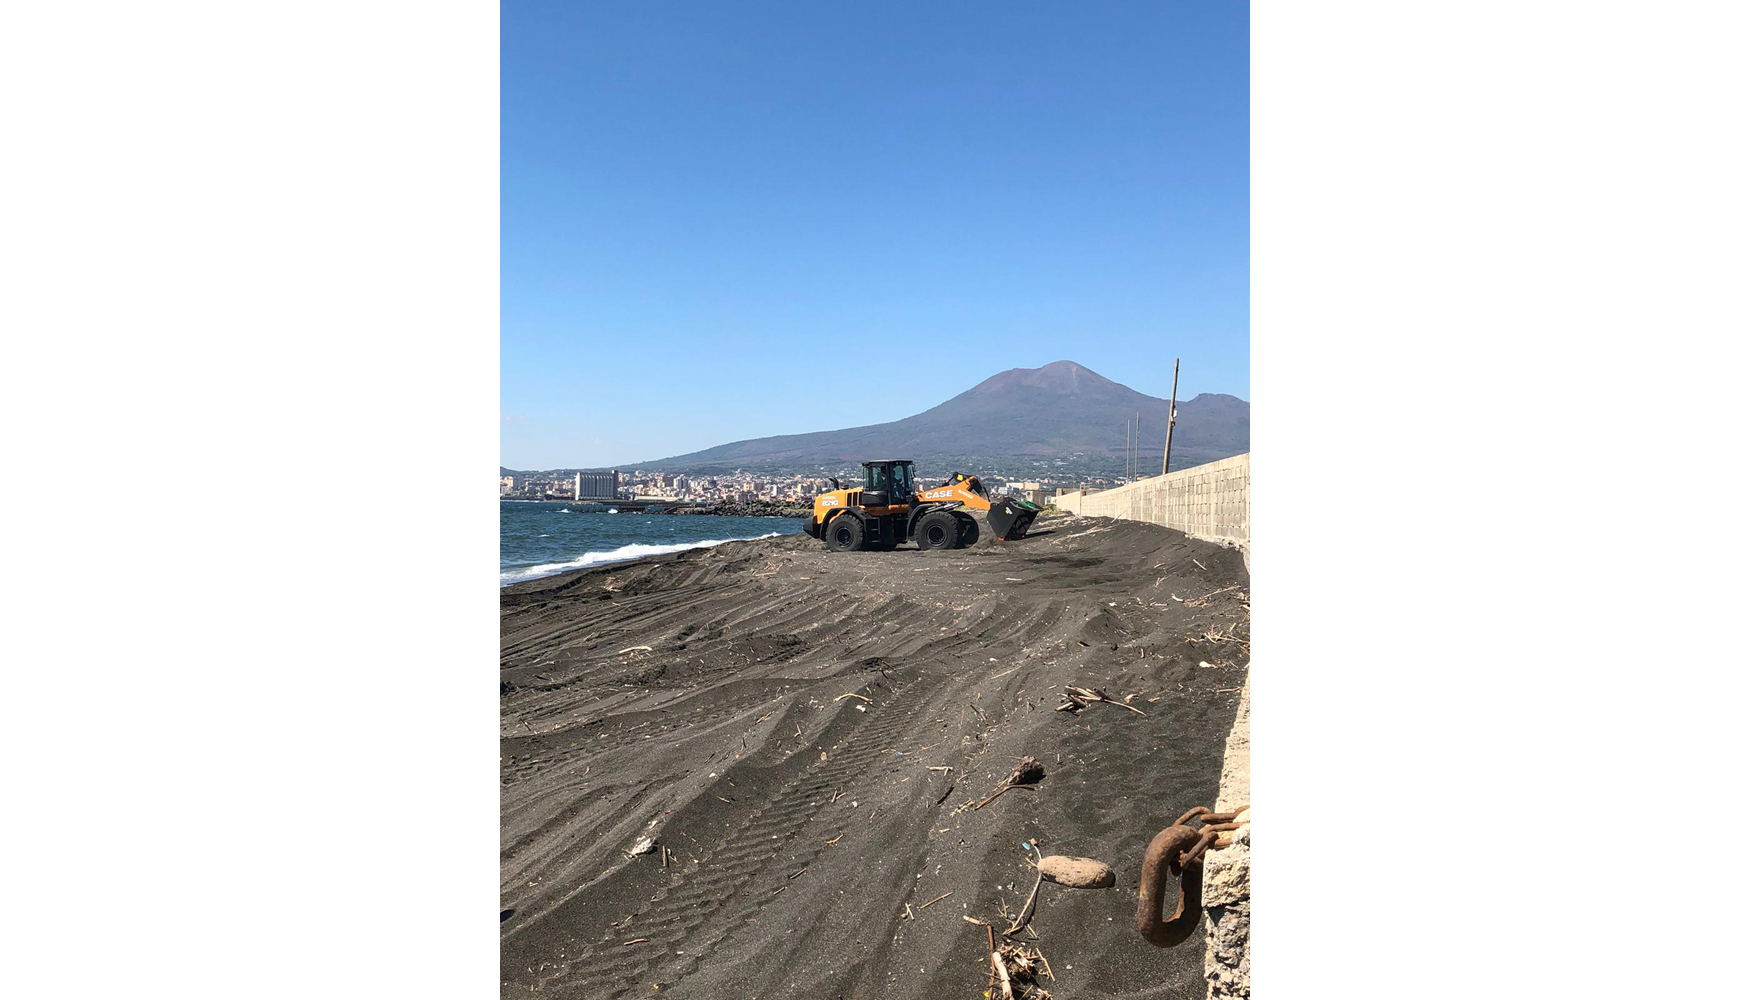 La mquina estuvo realizando trabajos de limpieza en la playa de Rovigliano (Torre Annunziata), que se encuentra en la desembocadura del ro...